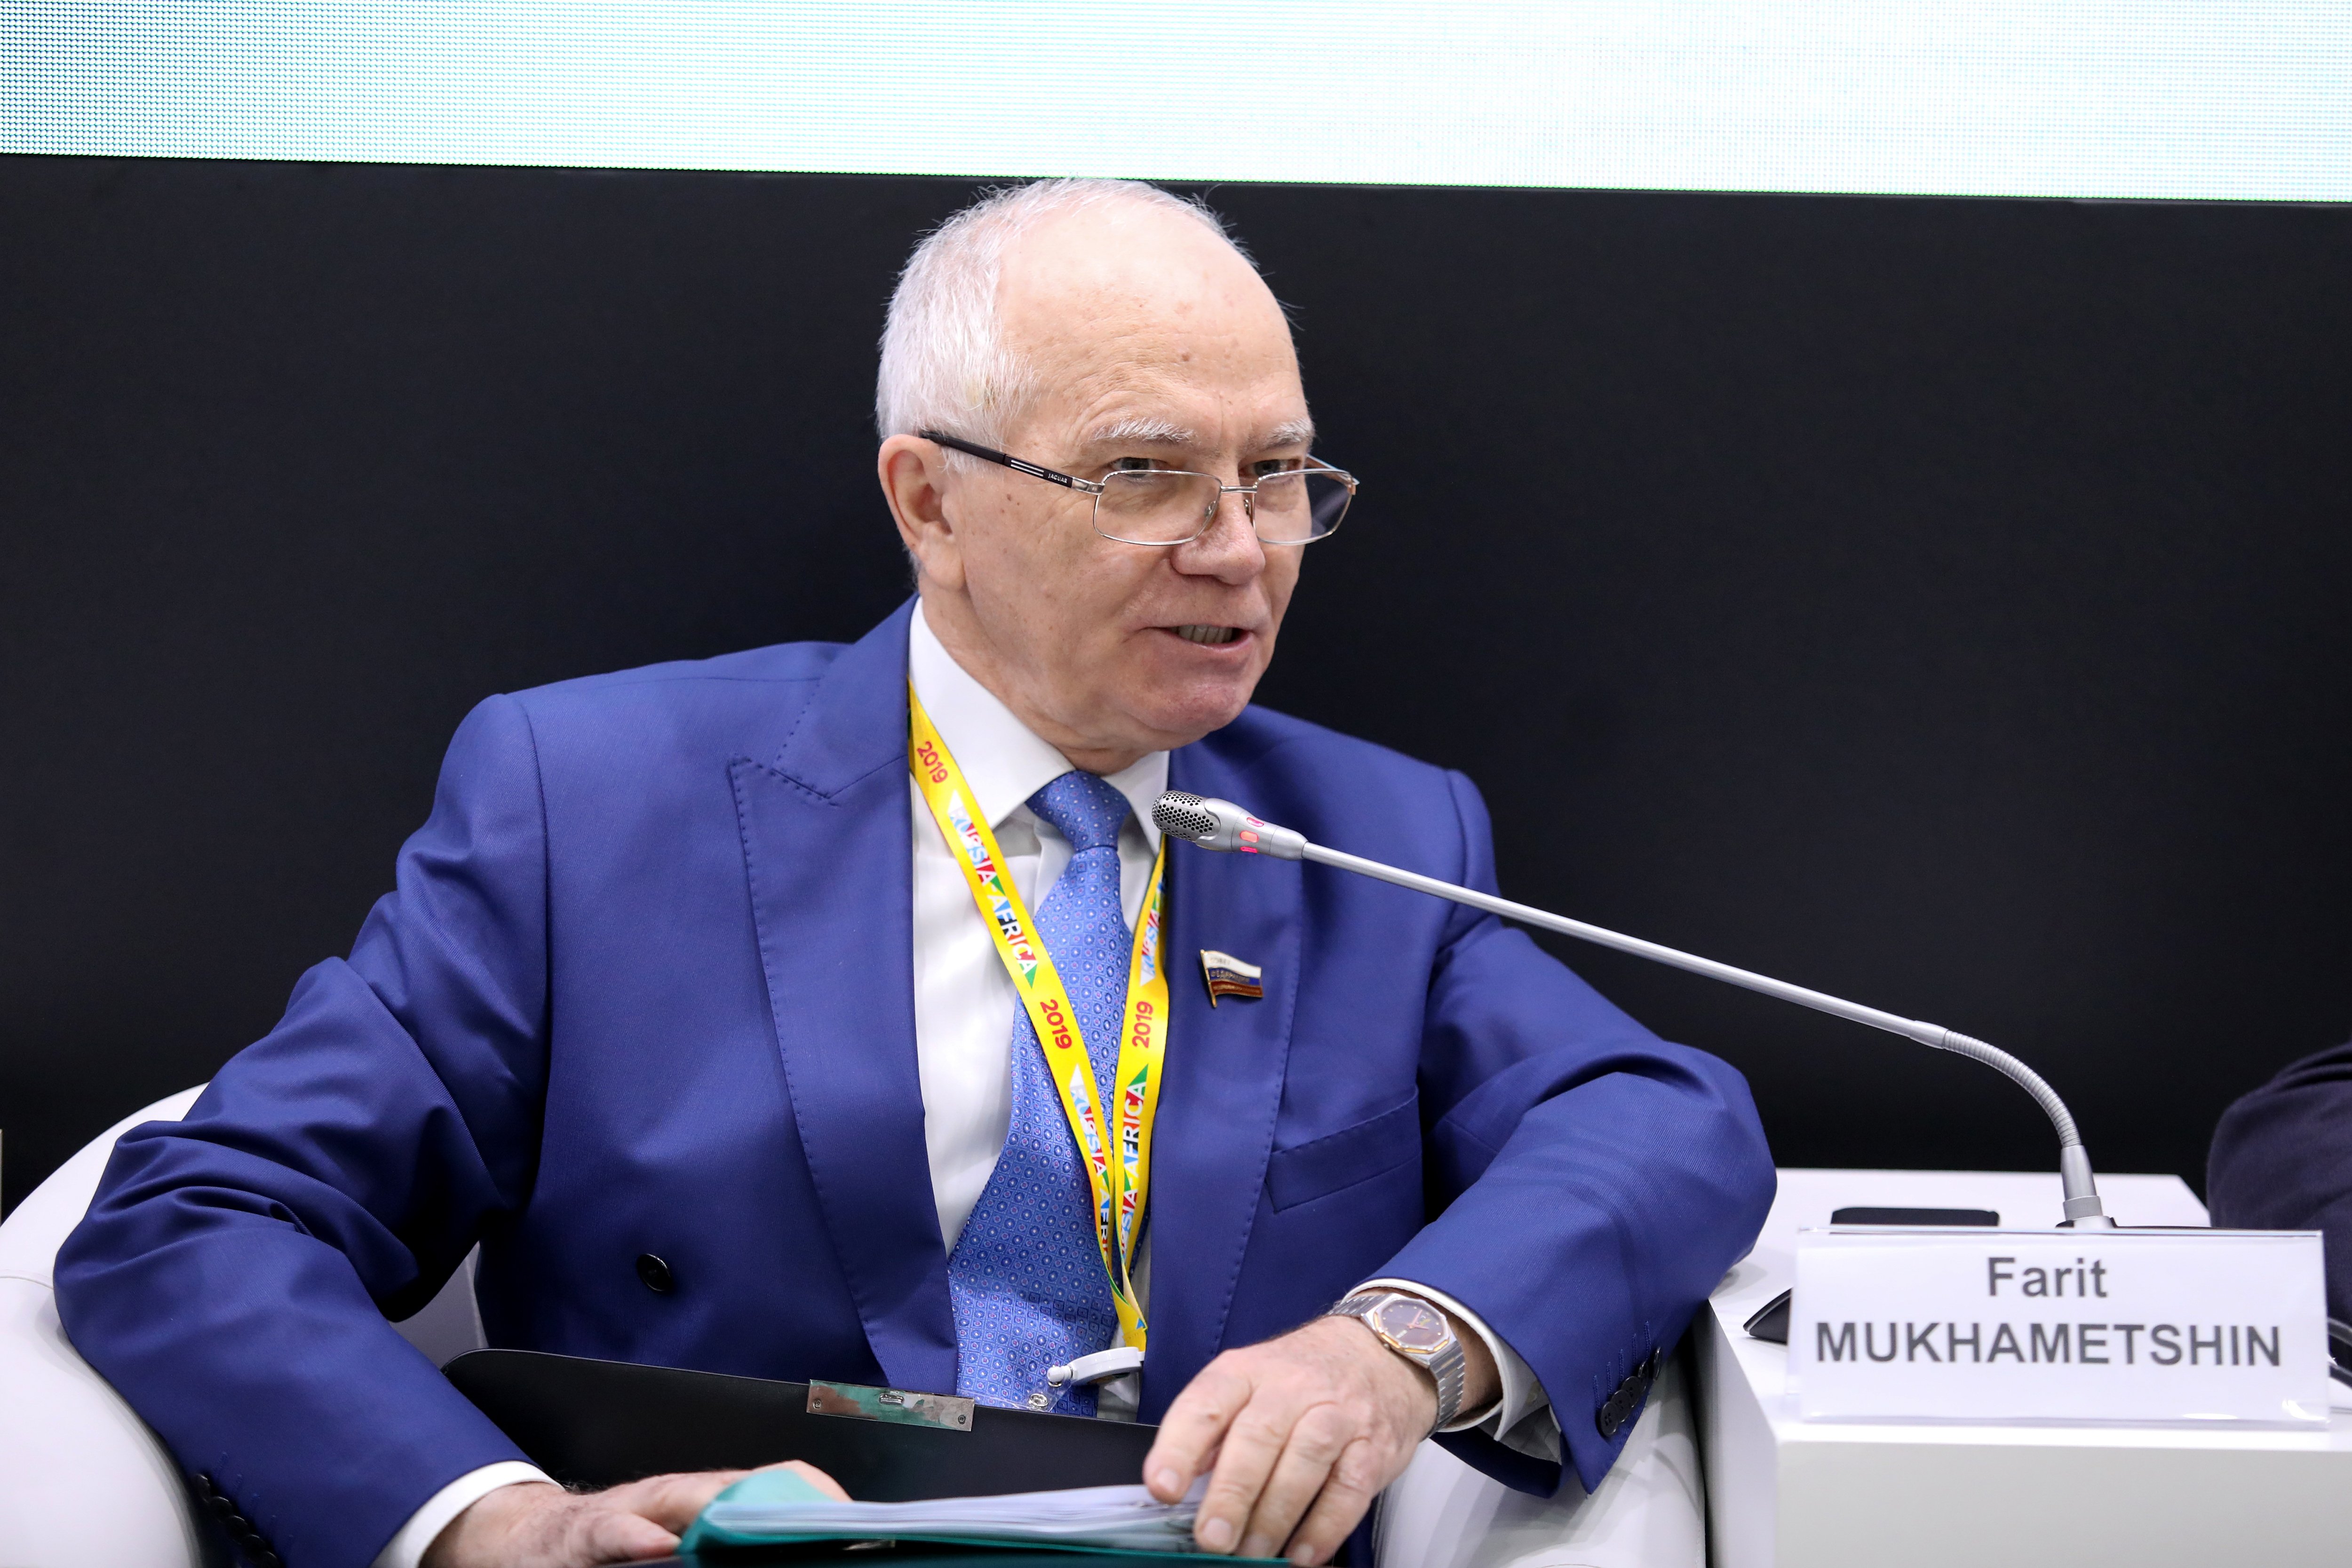 Ф. Мухаметшин принял участие в мероприятиях экономического форума .